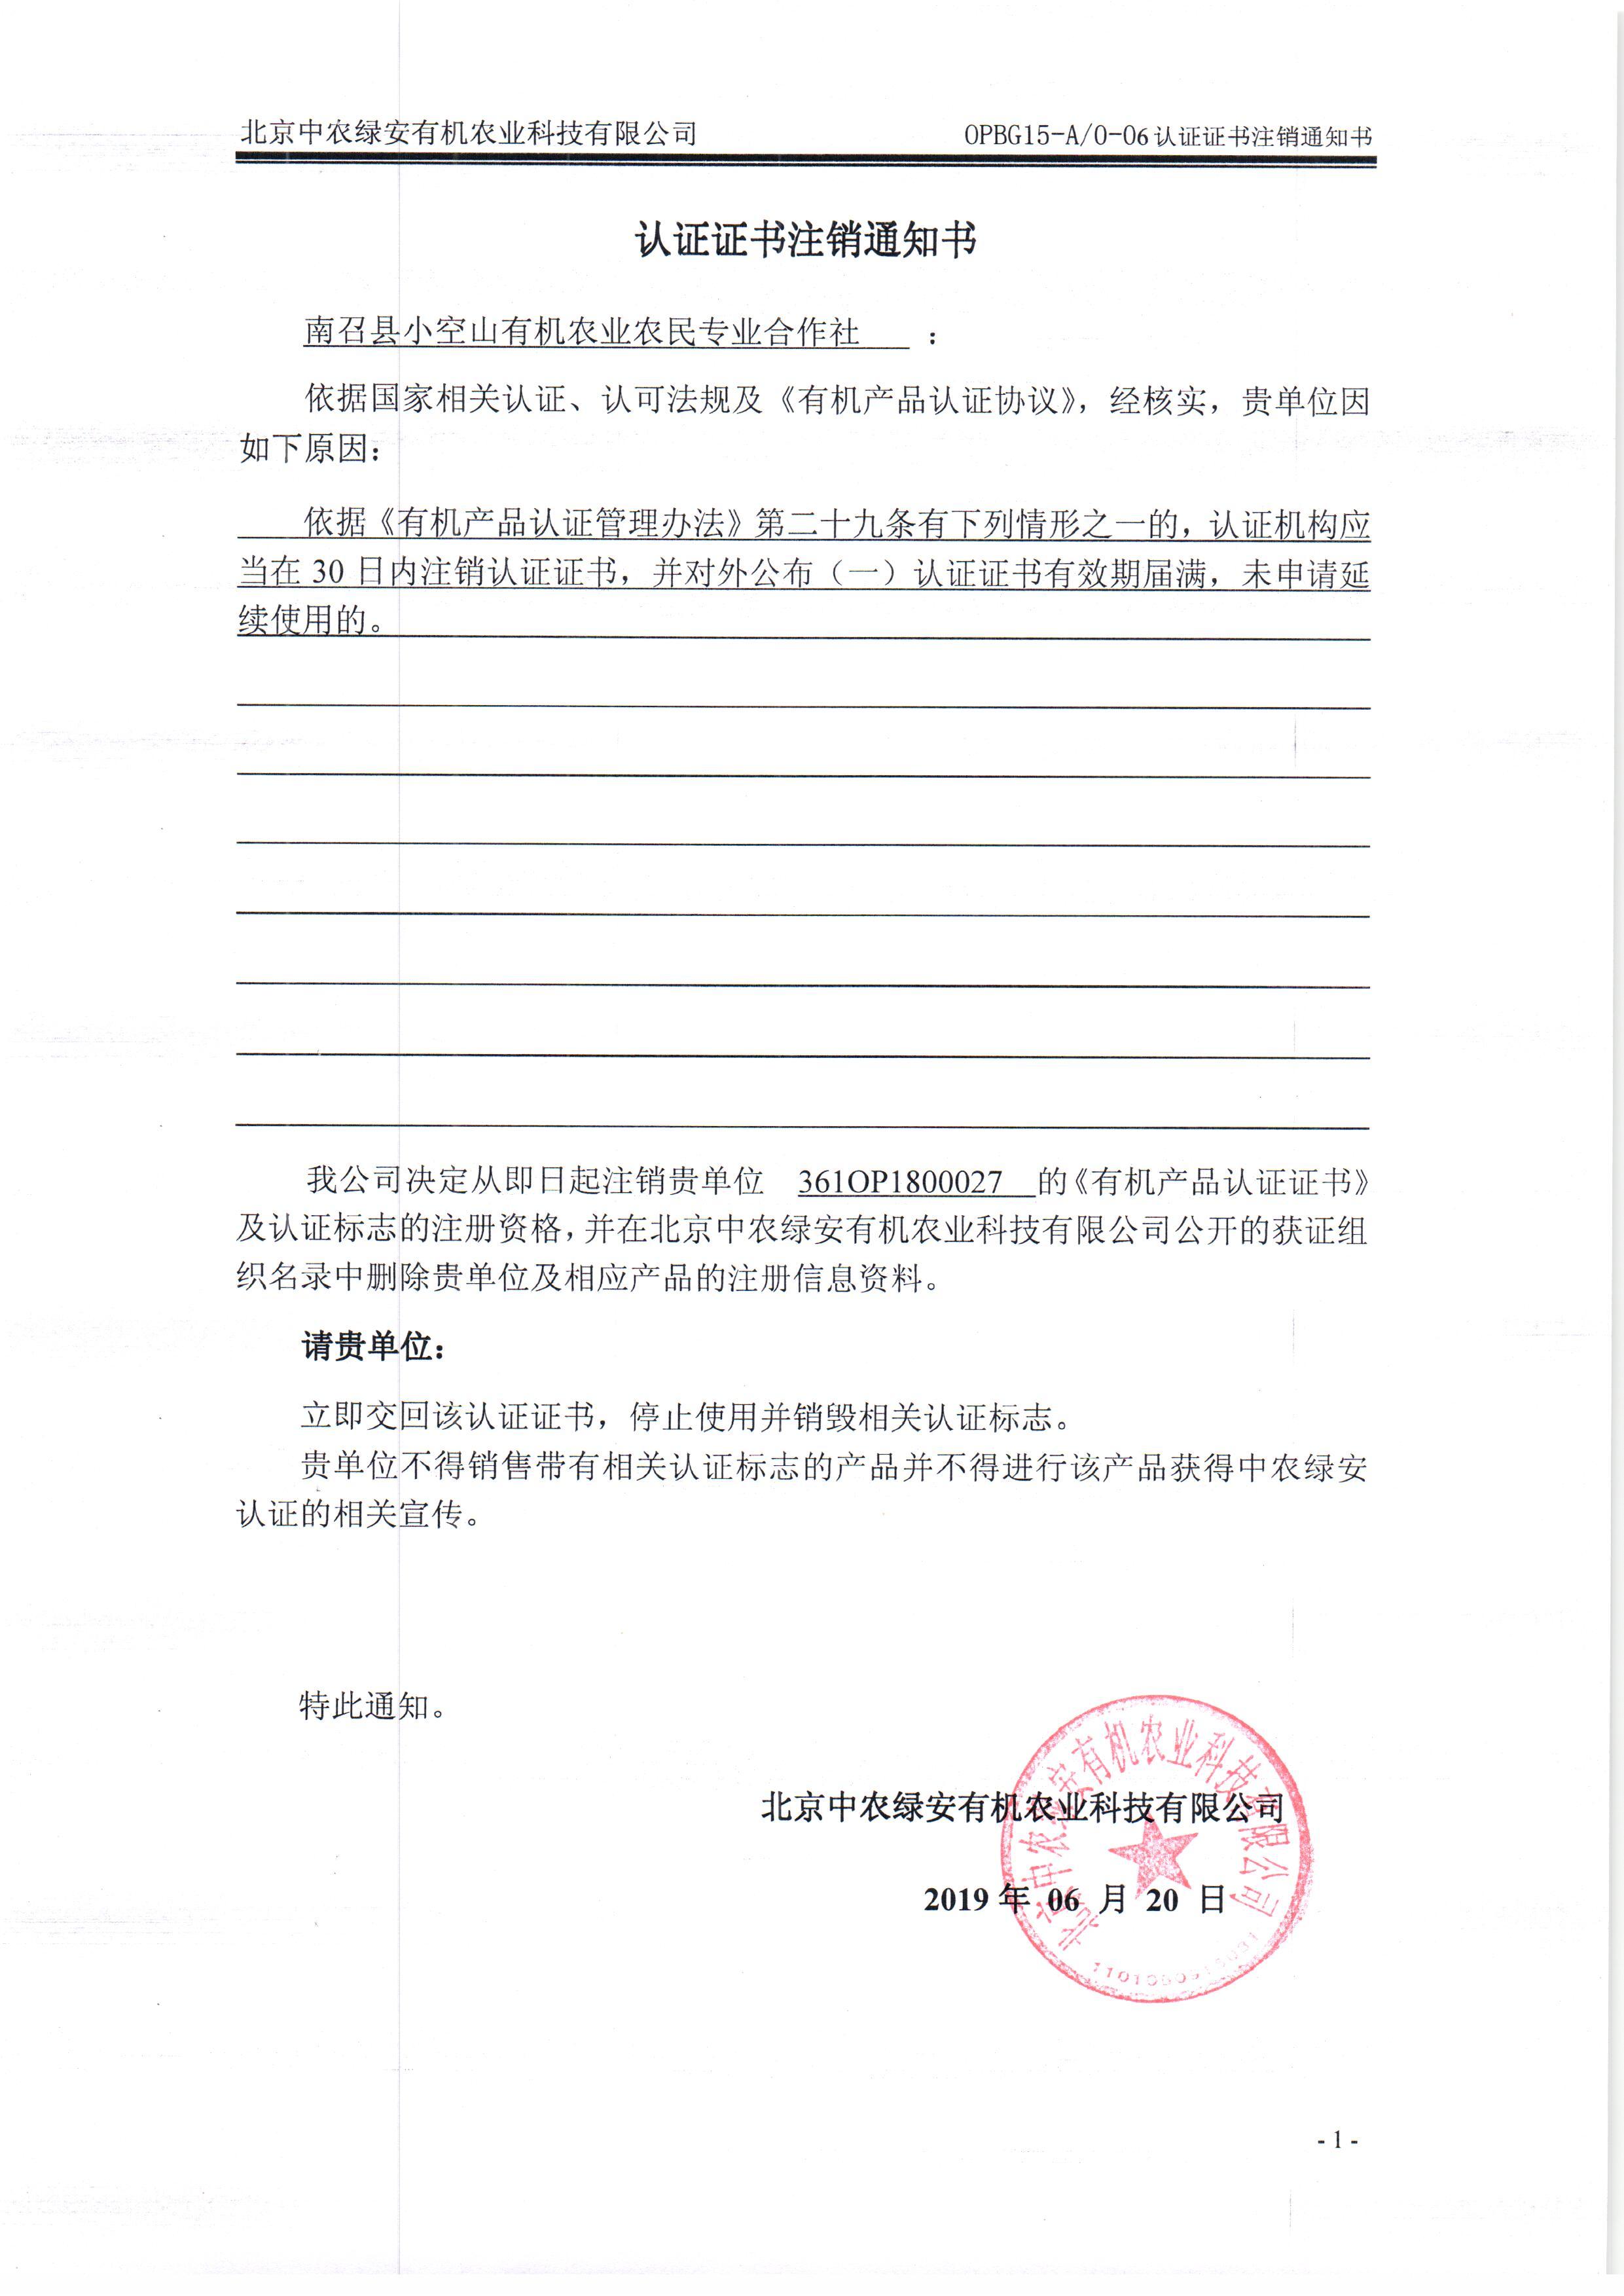 南召县小空山有机农业农民专业合作社证书注销通知书